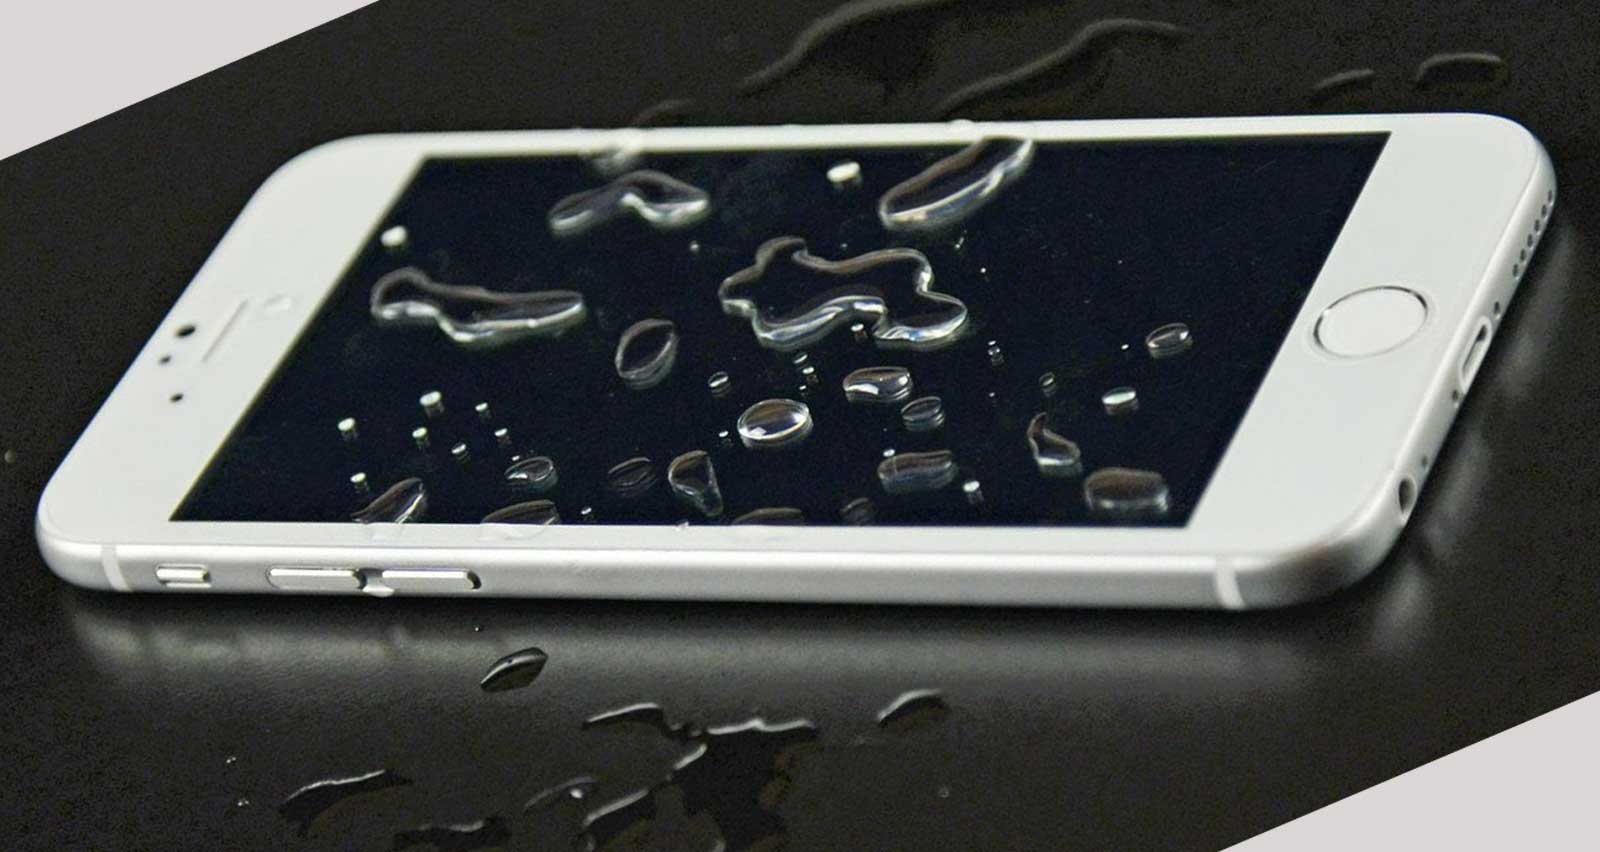 Залил, утопил iPhone 6? Айфон 6 упал в воду? Что делать?